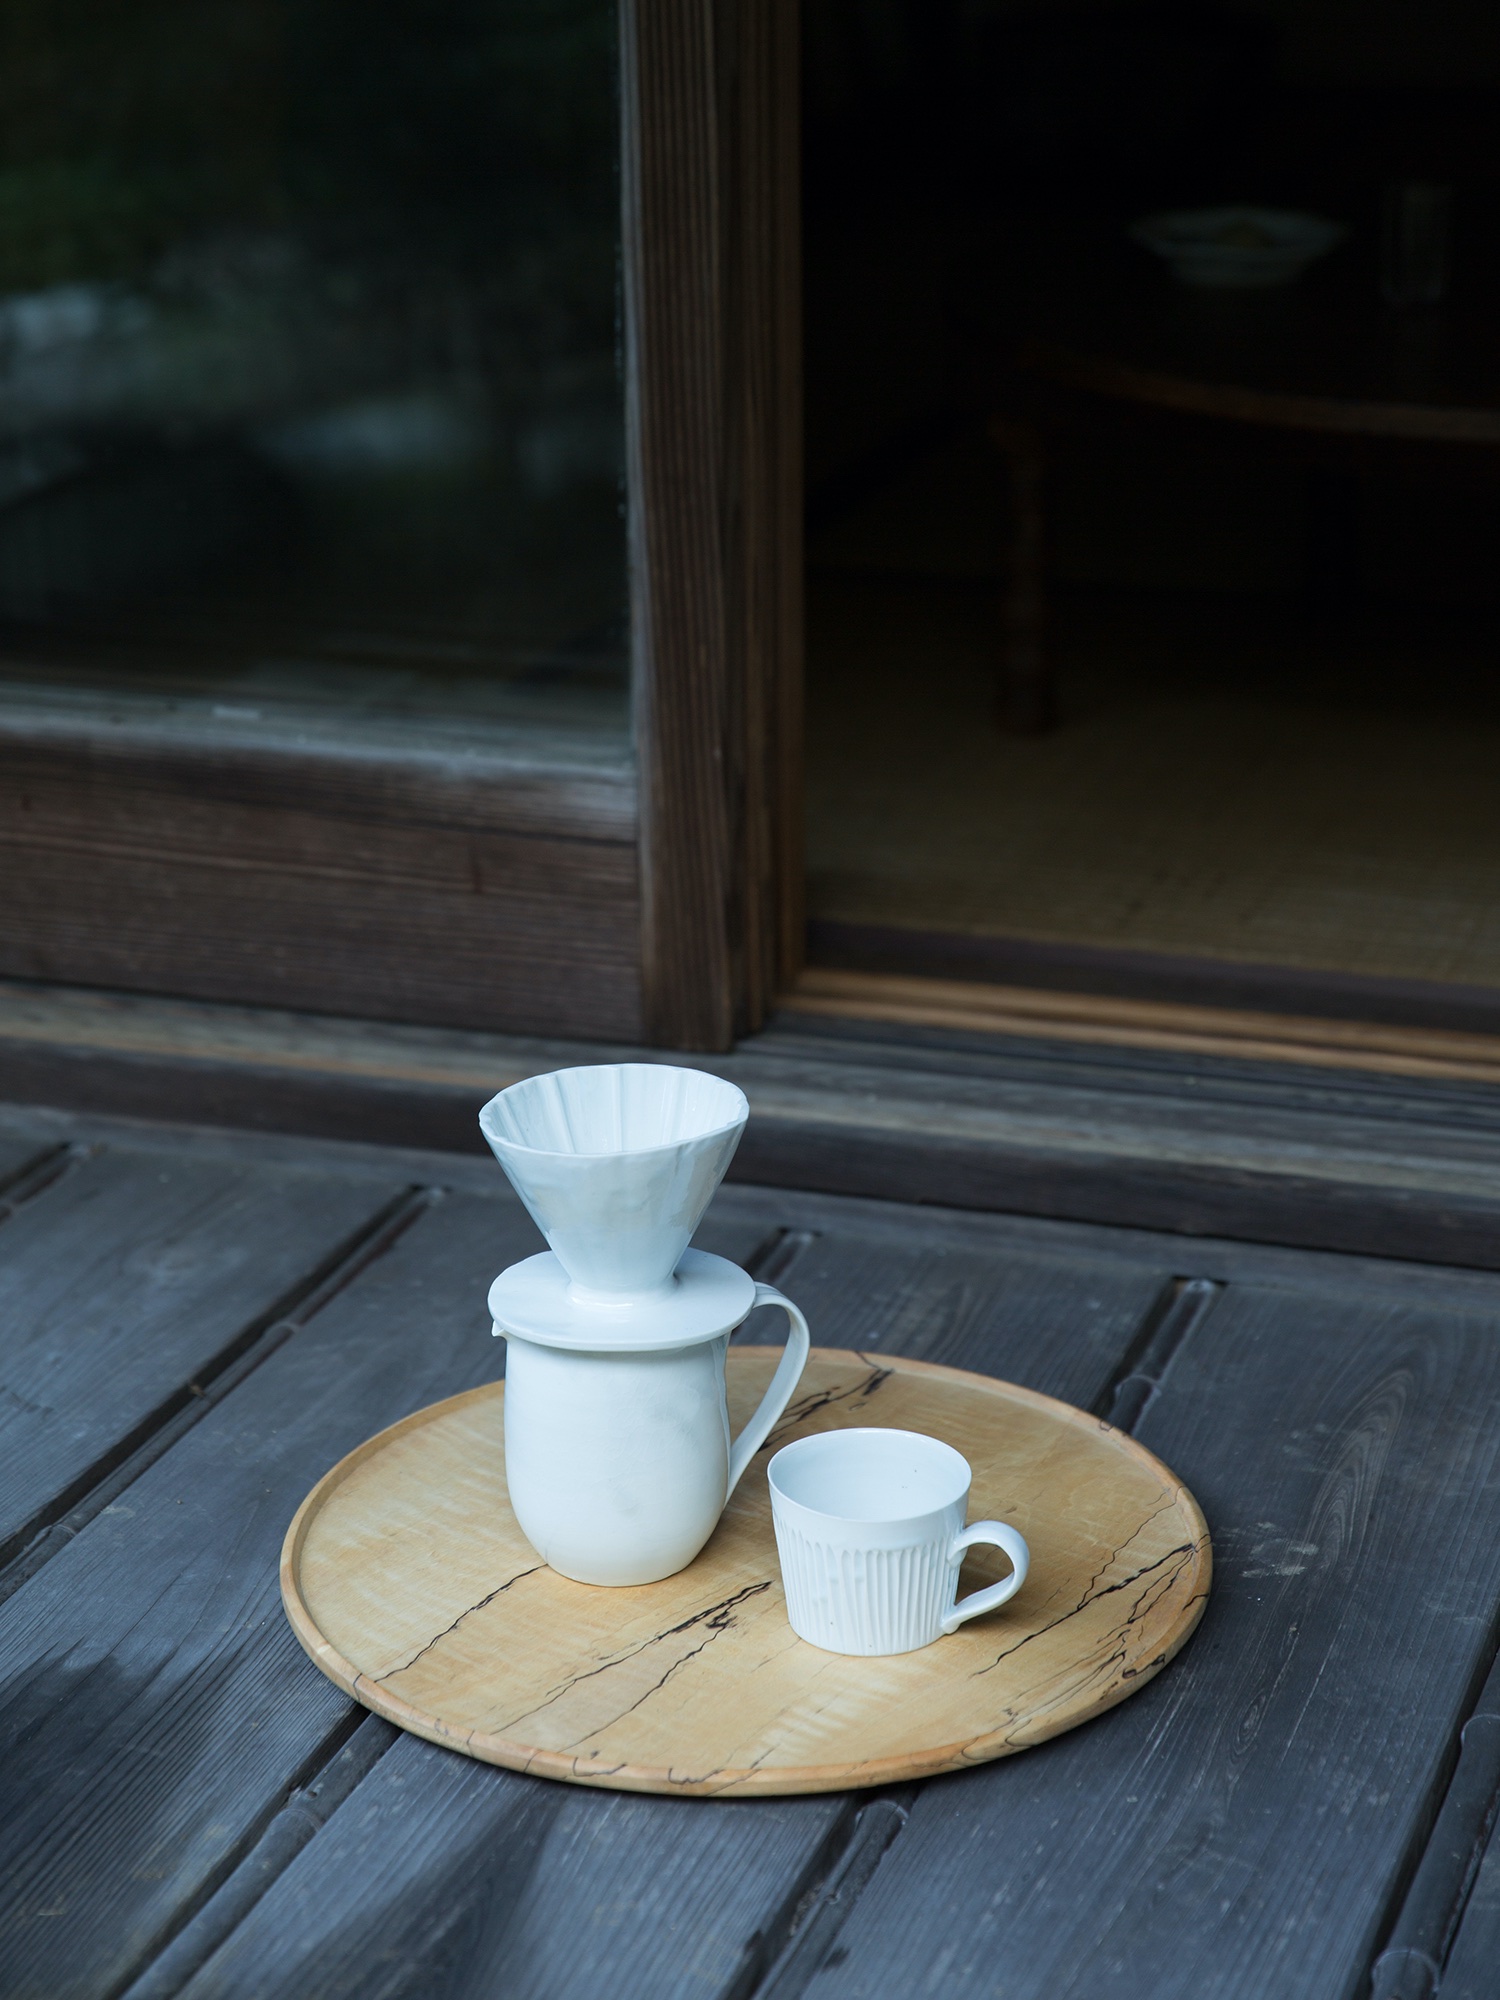 竹下努さんの青白磁ピッチャー、ドリッパー、広口コーヒーカップです。